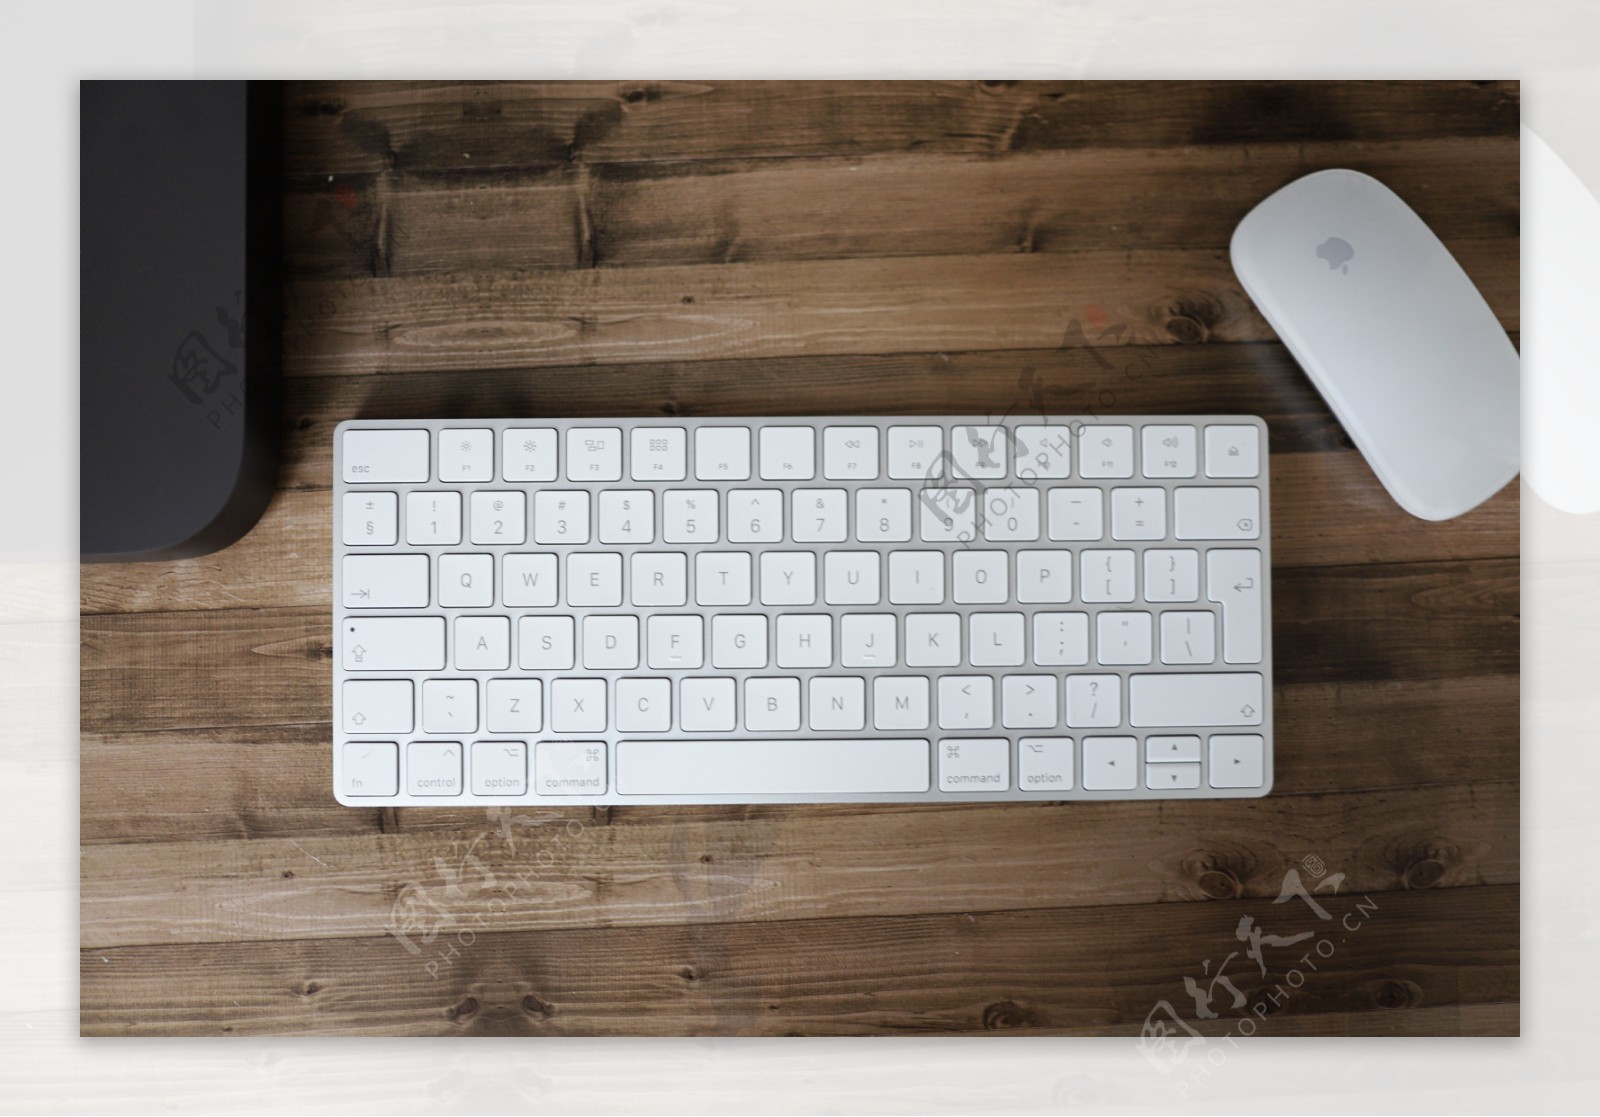 白色键盘